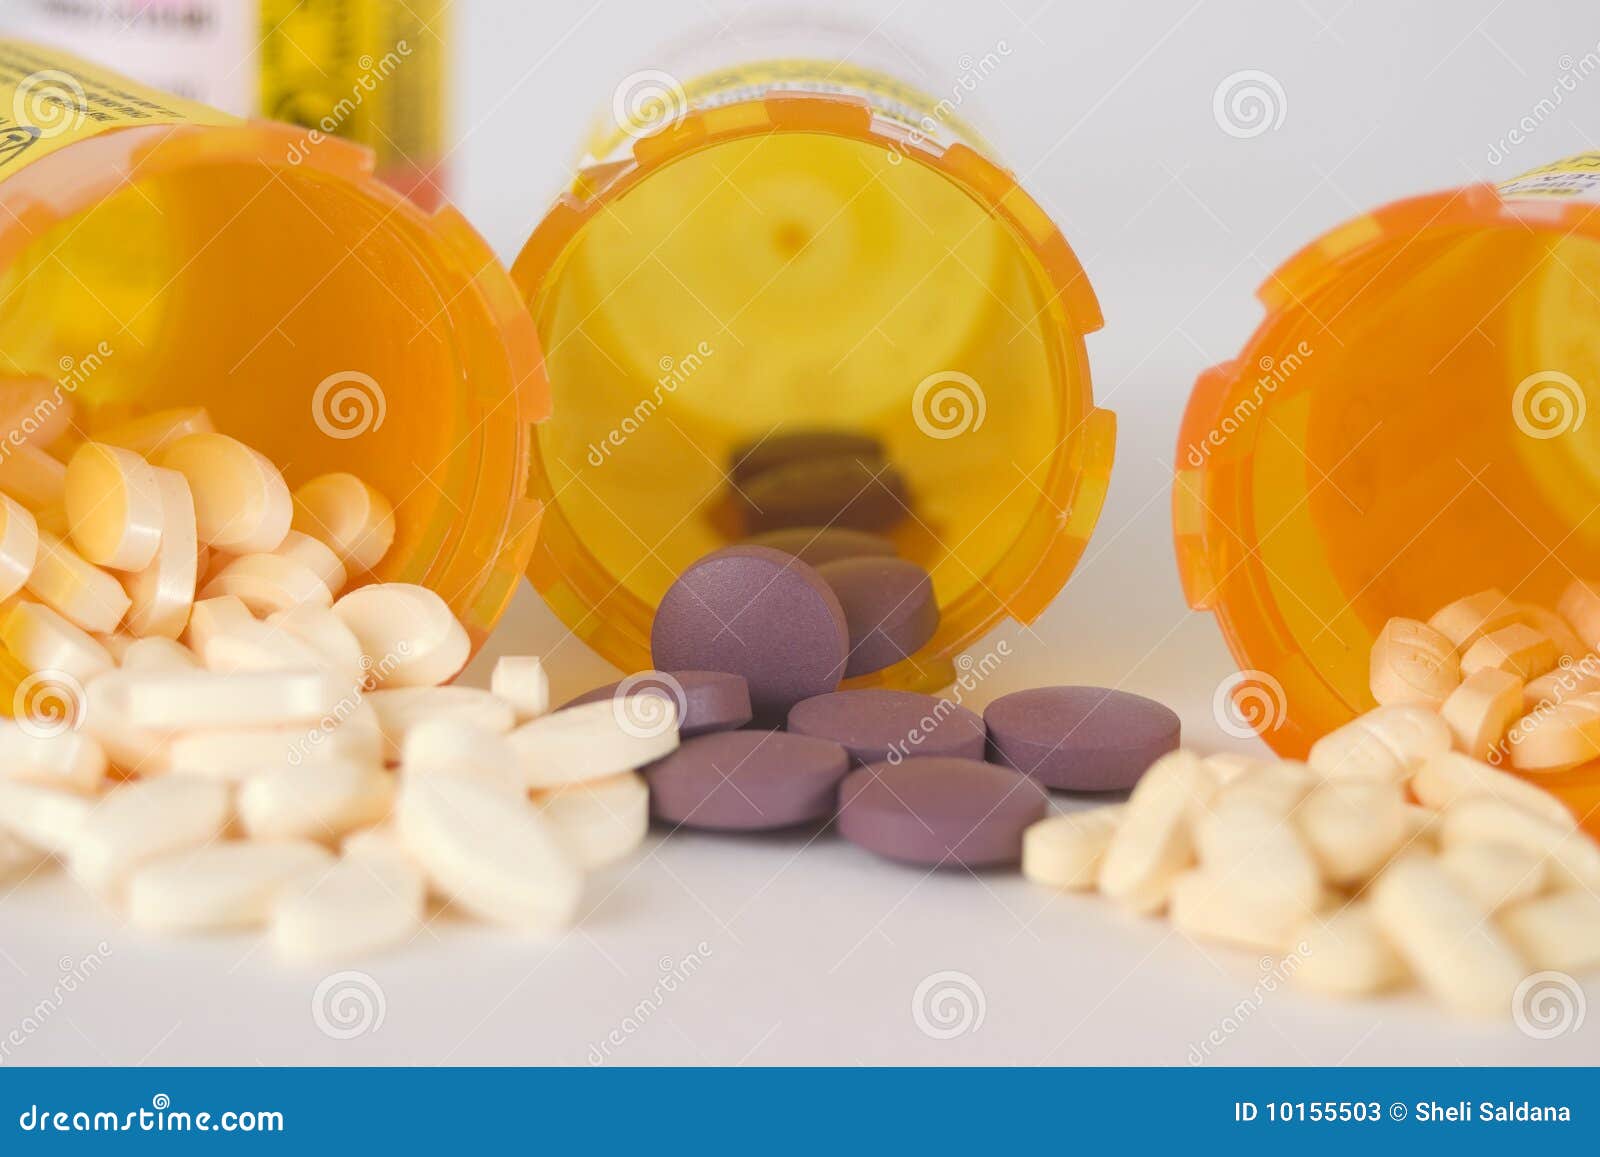 prescription medication pill bottles 8